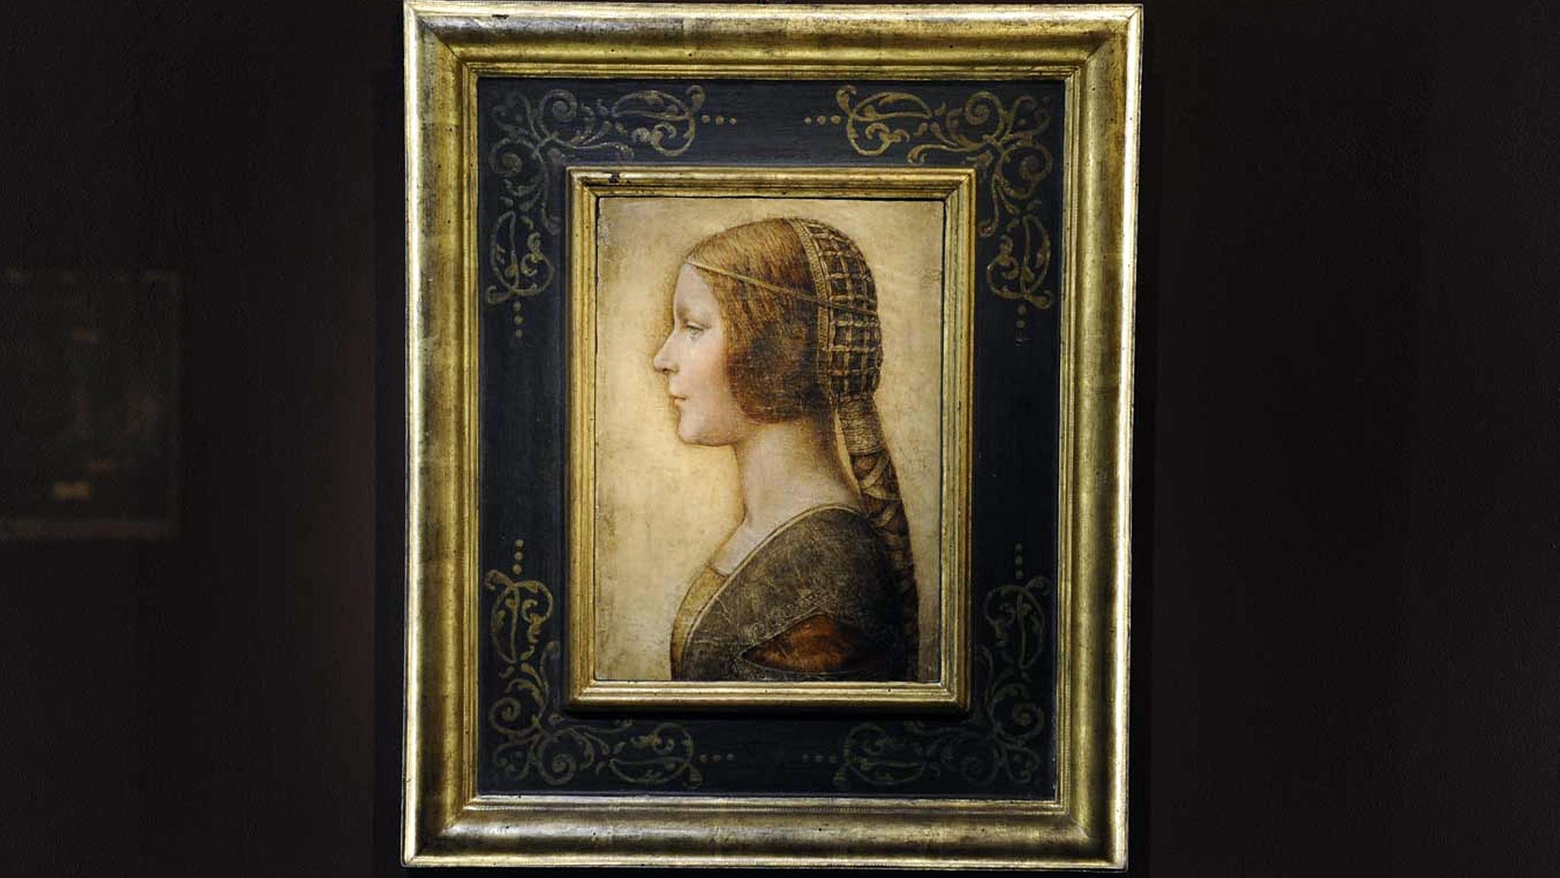 Il ritratto 'La bella principessa' di Leonardo da Vinci